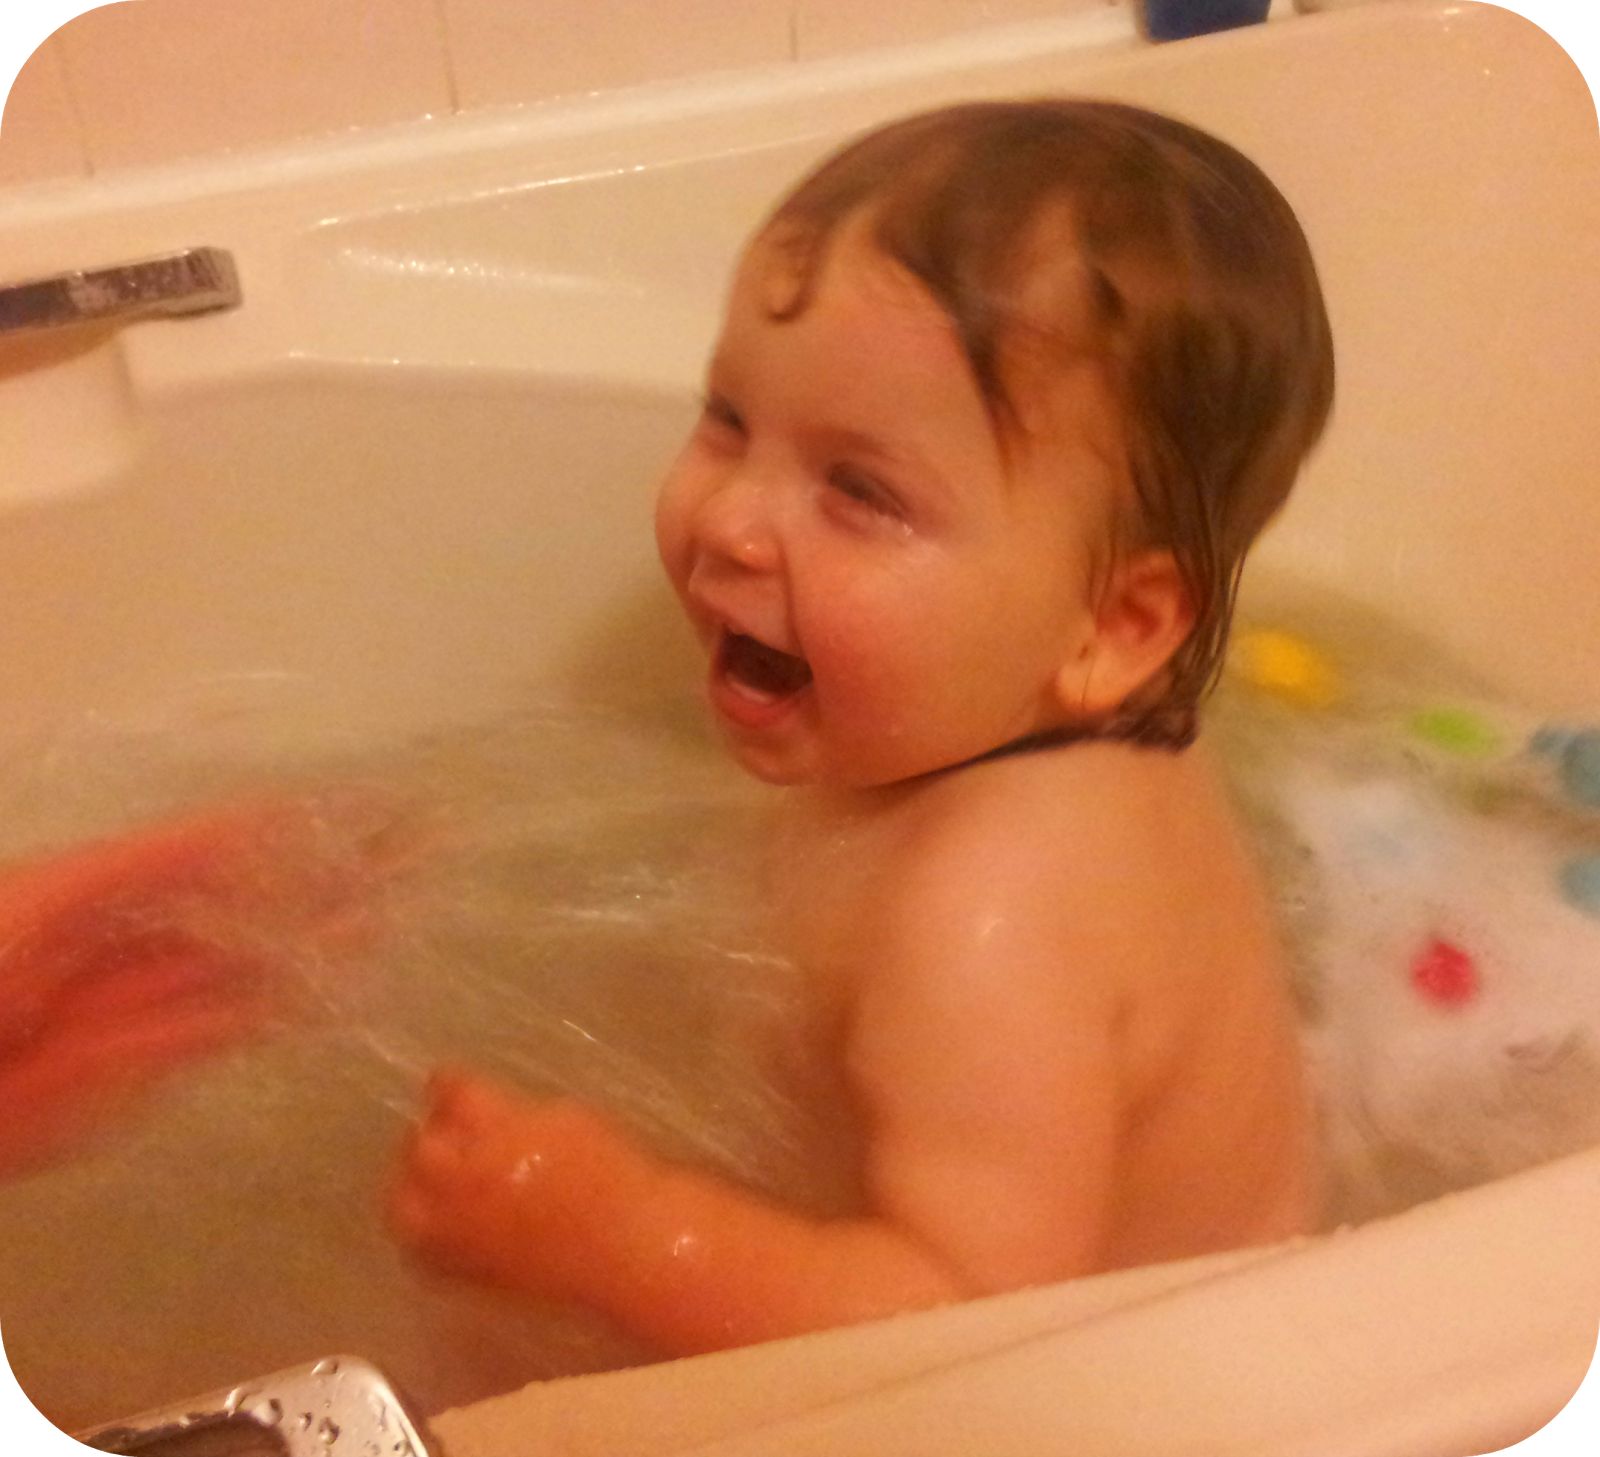 Купается в ванной. Малыш в ванне. Дети купаются в ванной. Малыш купается в ванне. Русские купаются в ванной